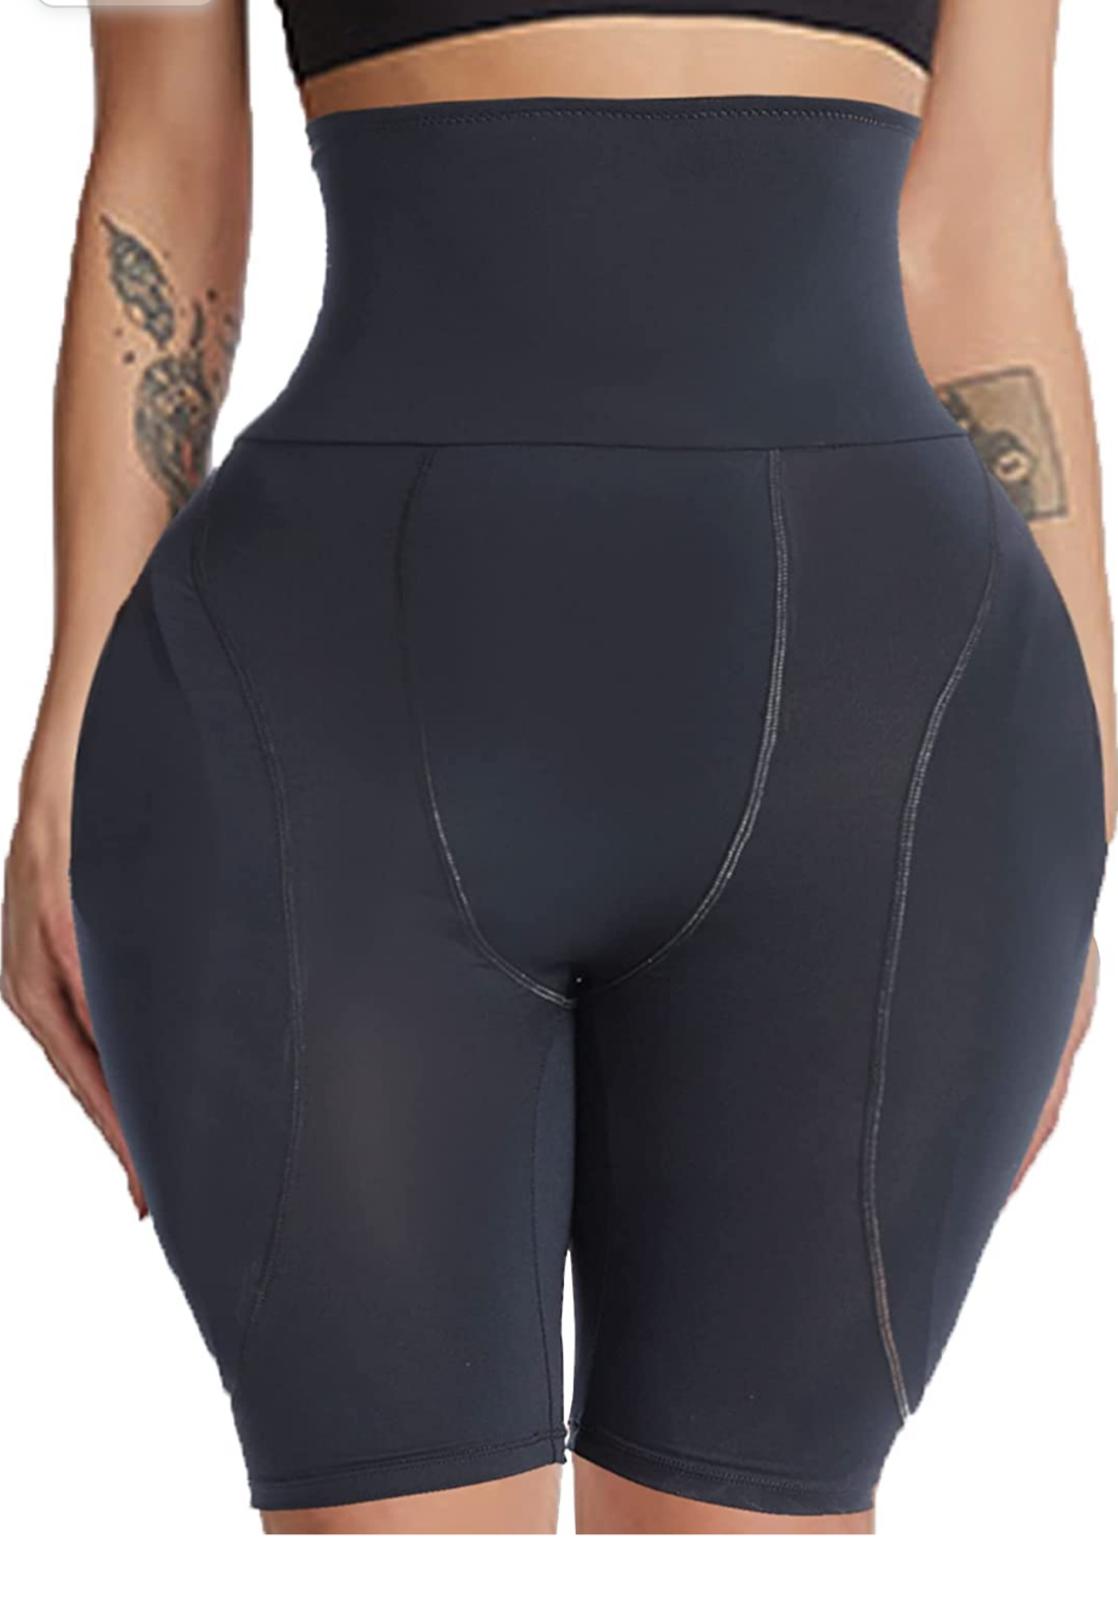 Banage Hip Enhancer Panties with Extra Large Pads Butt Lifting